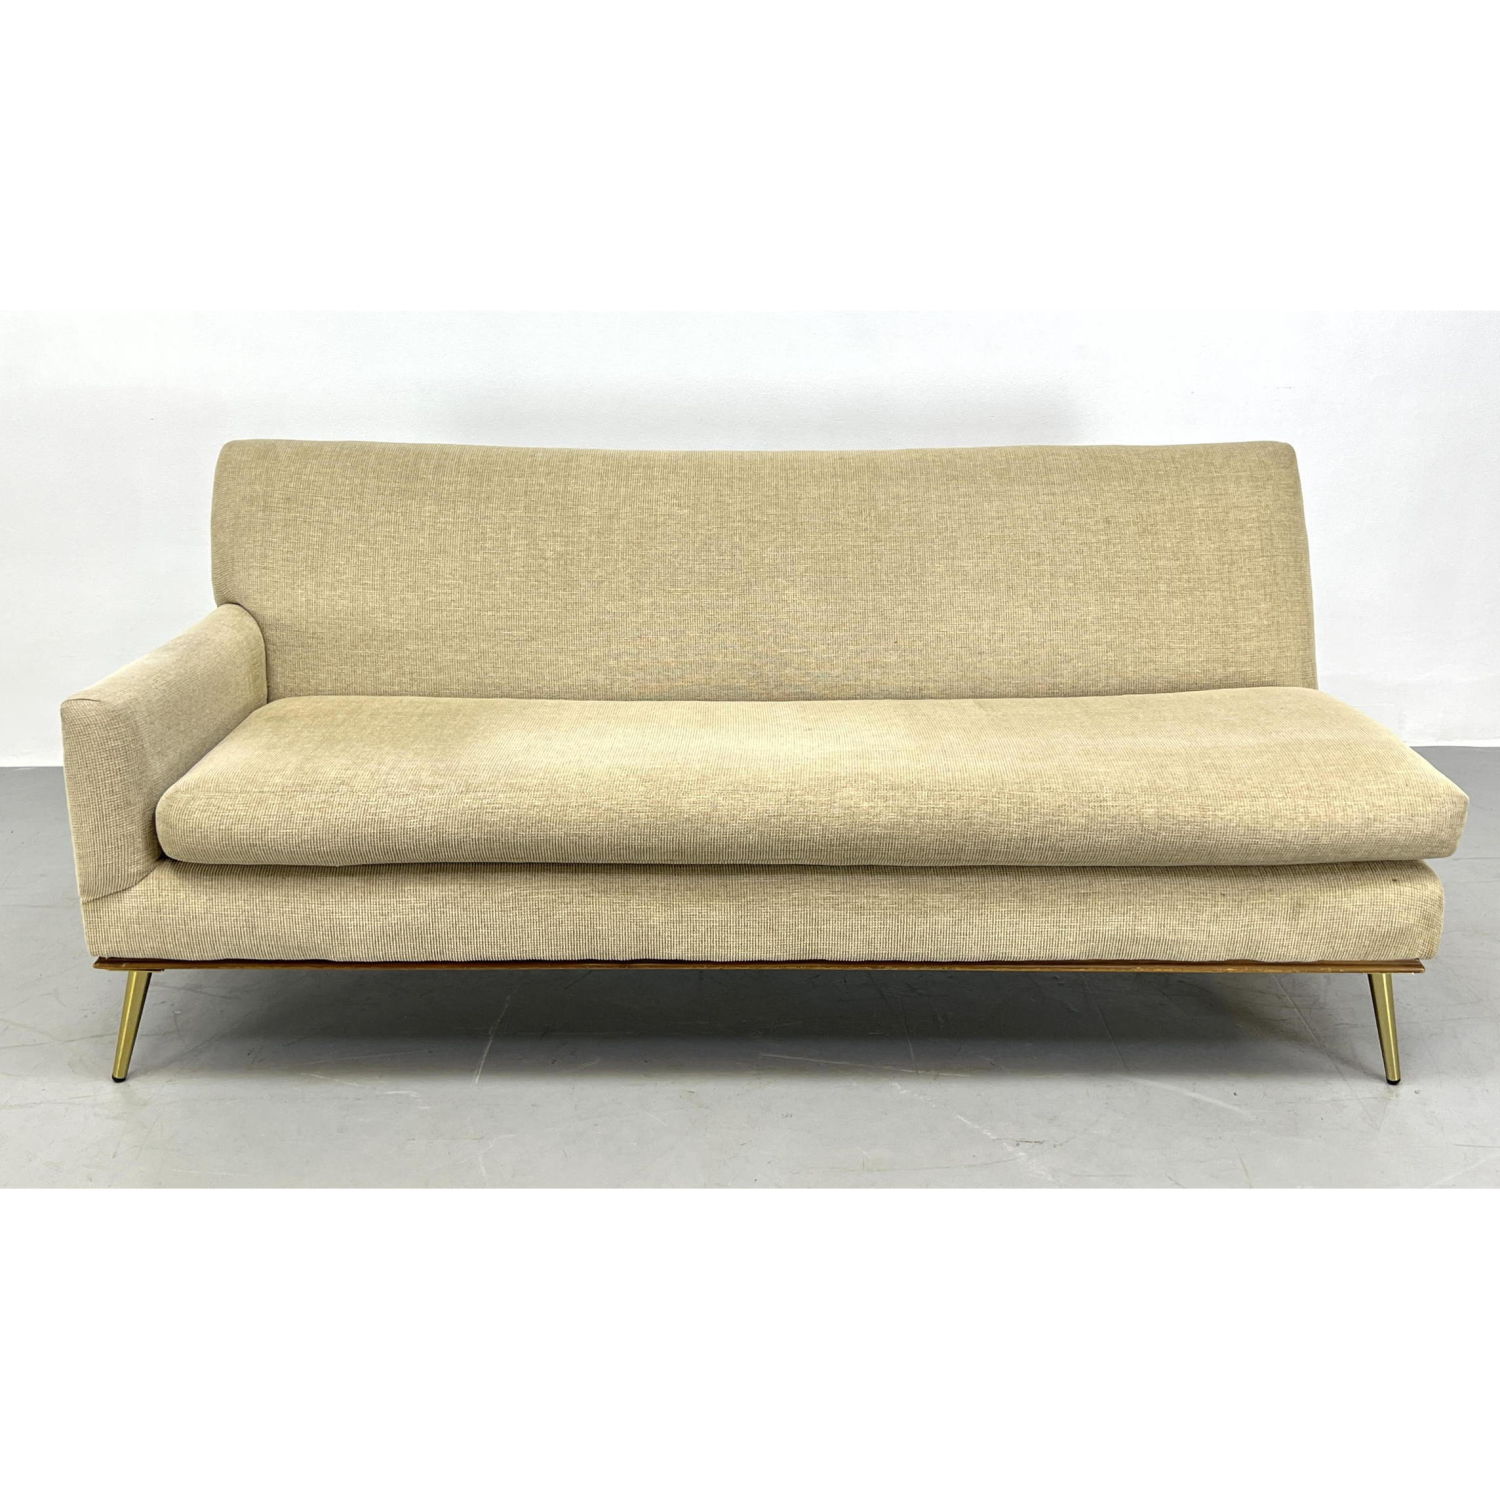 Modernist Single Arm Sofa Couch  2ba5c6